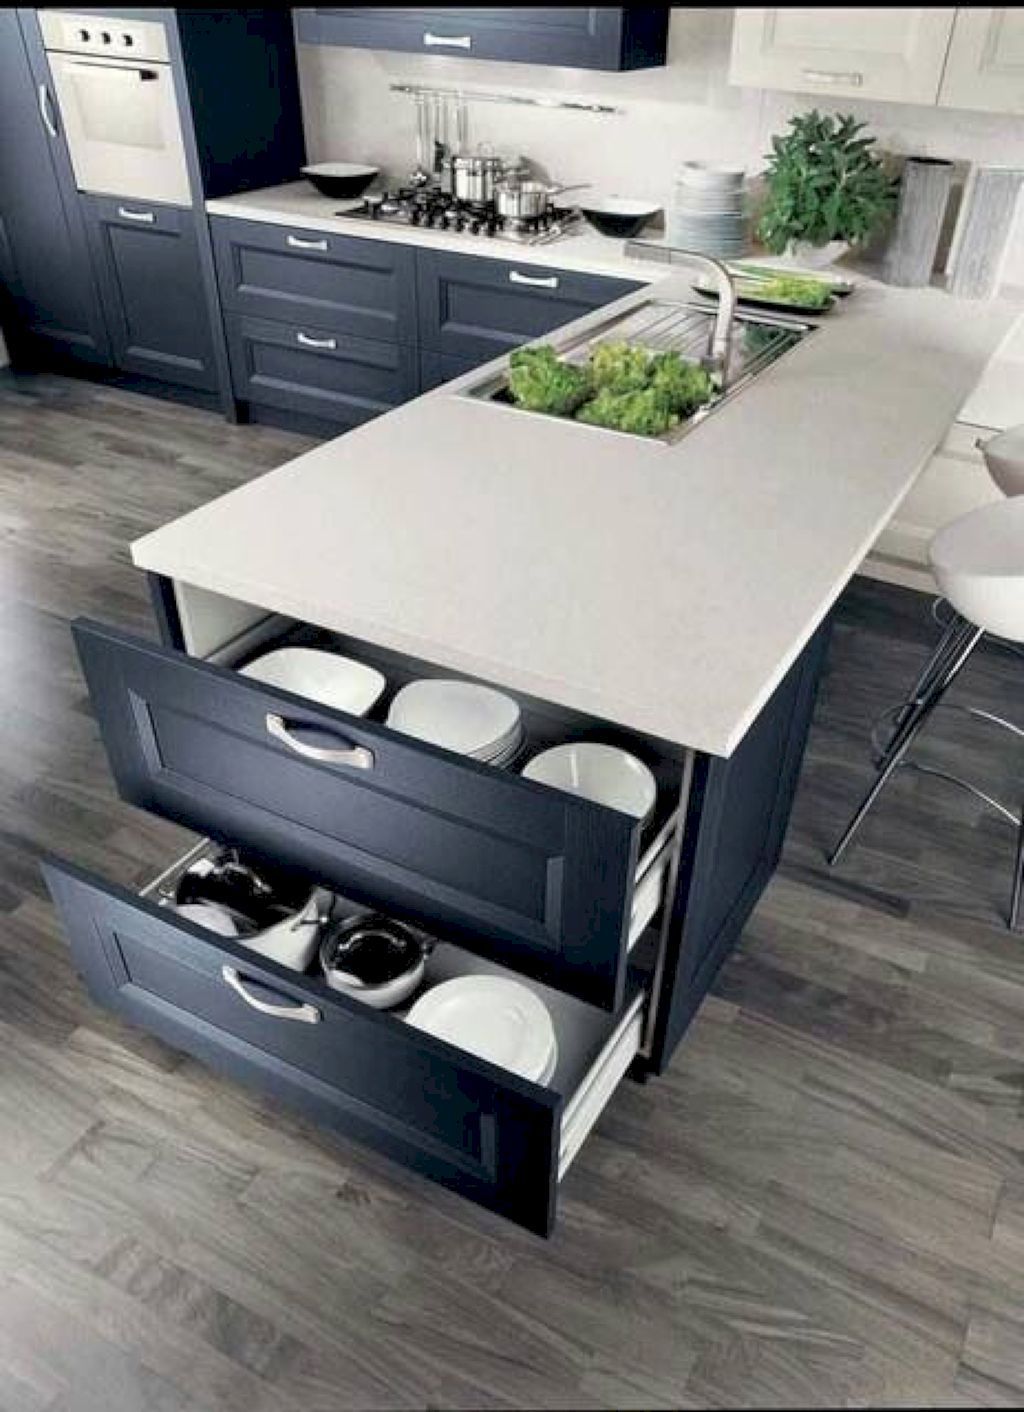 Best kitchen design ideas 11.jpg